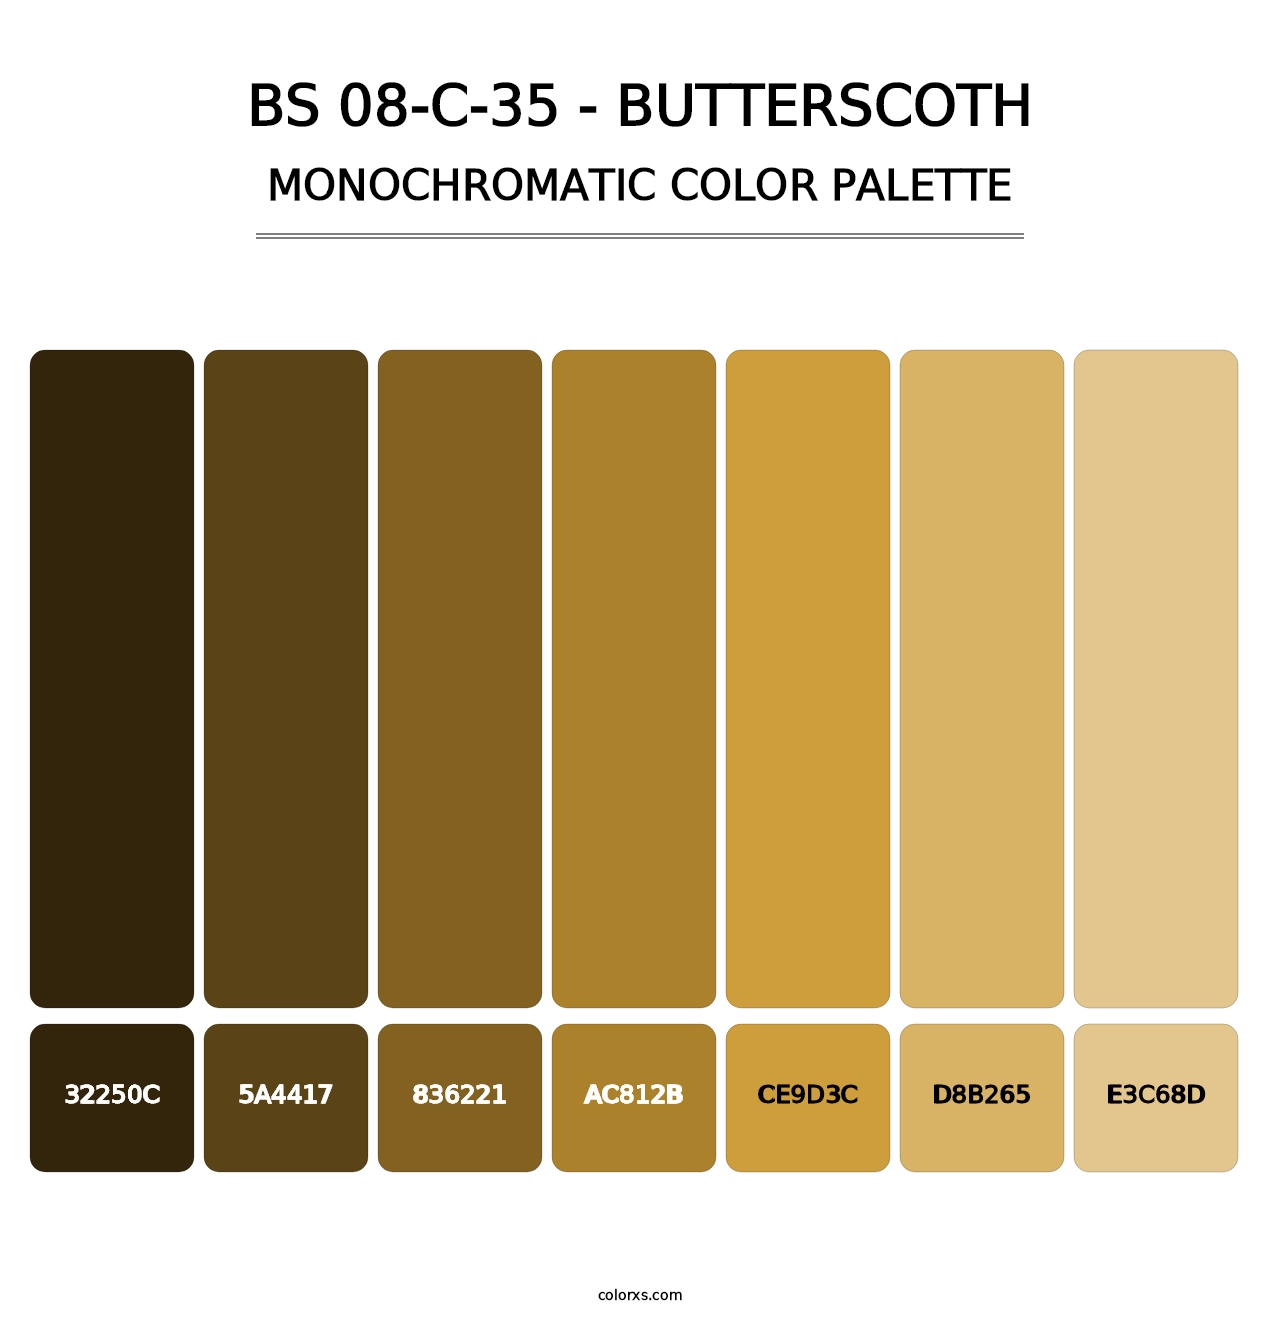 BS 08-C-35 - Butterscoth - Monochromatic Color Palette